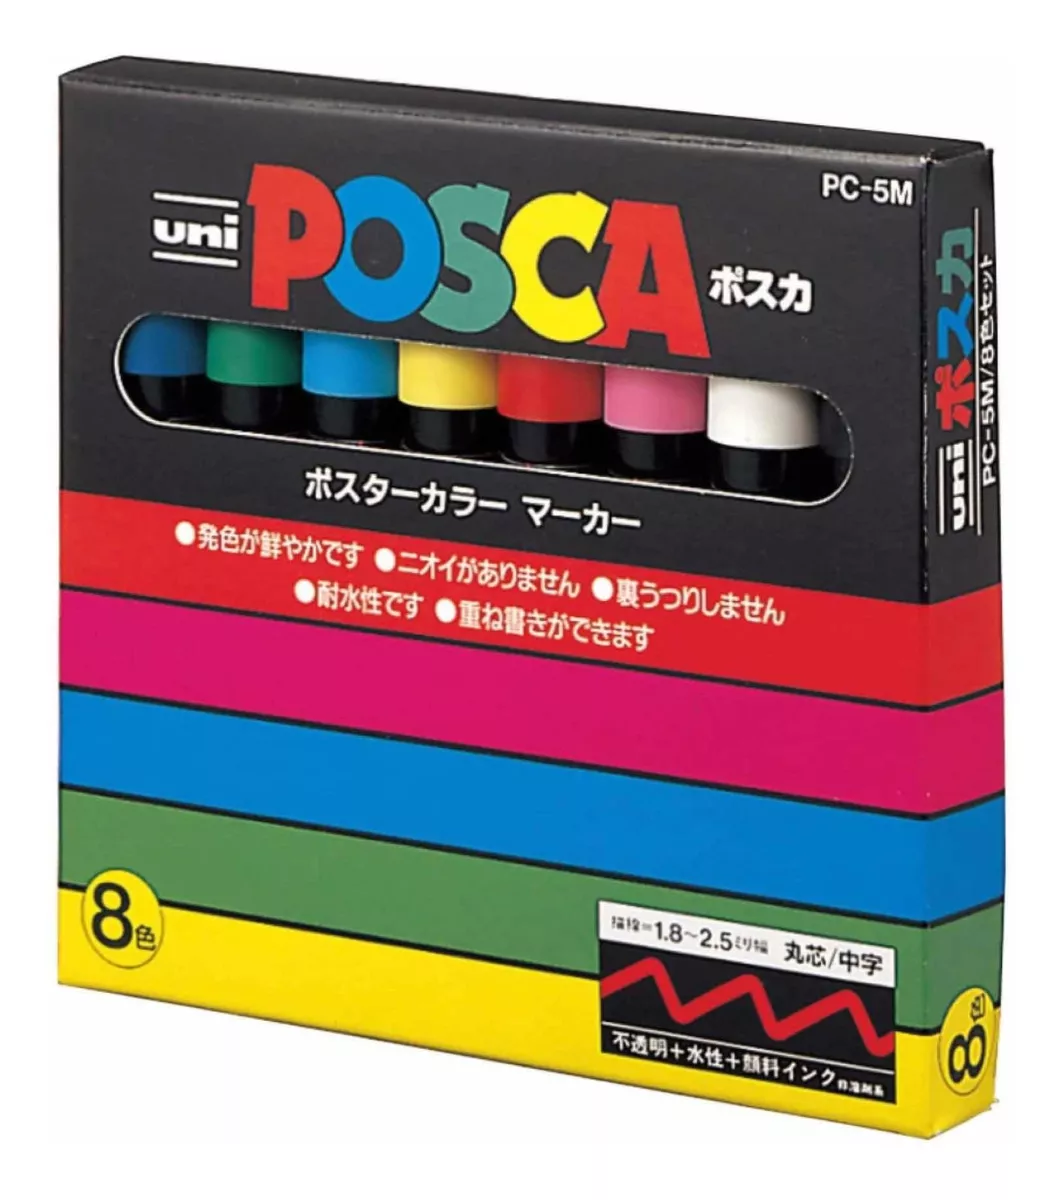 Set Marcadores Posca 5m 8 Colores Original Japonés - Pc 5m8c